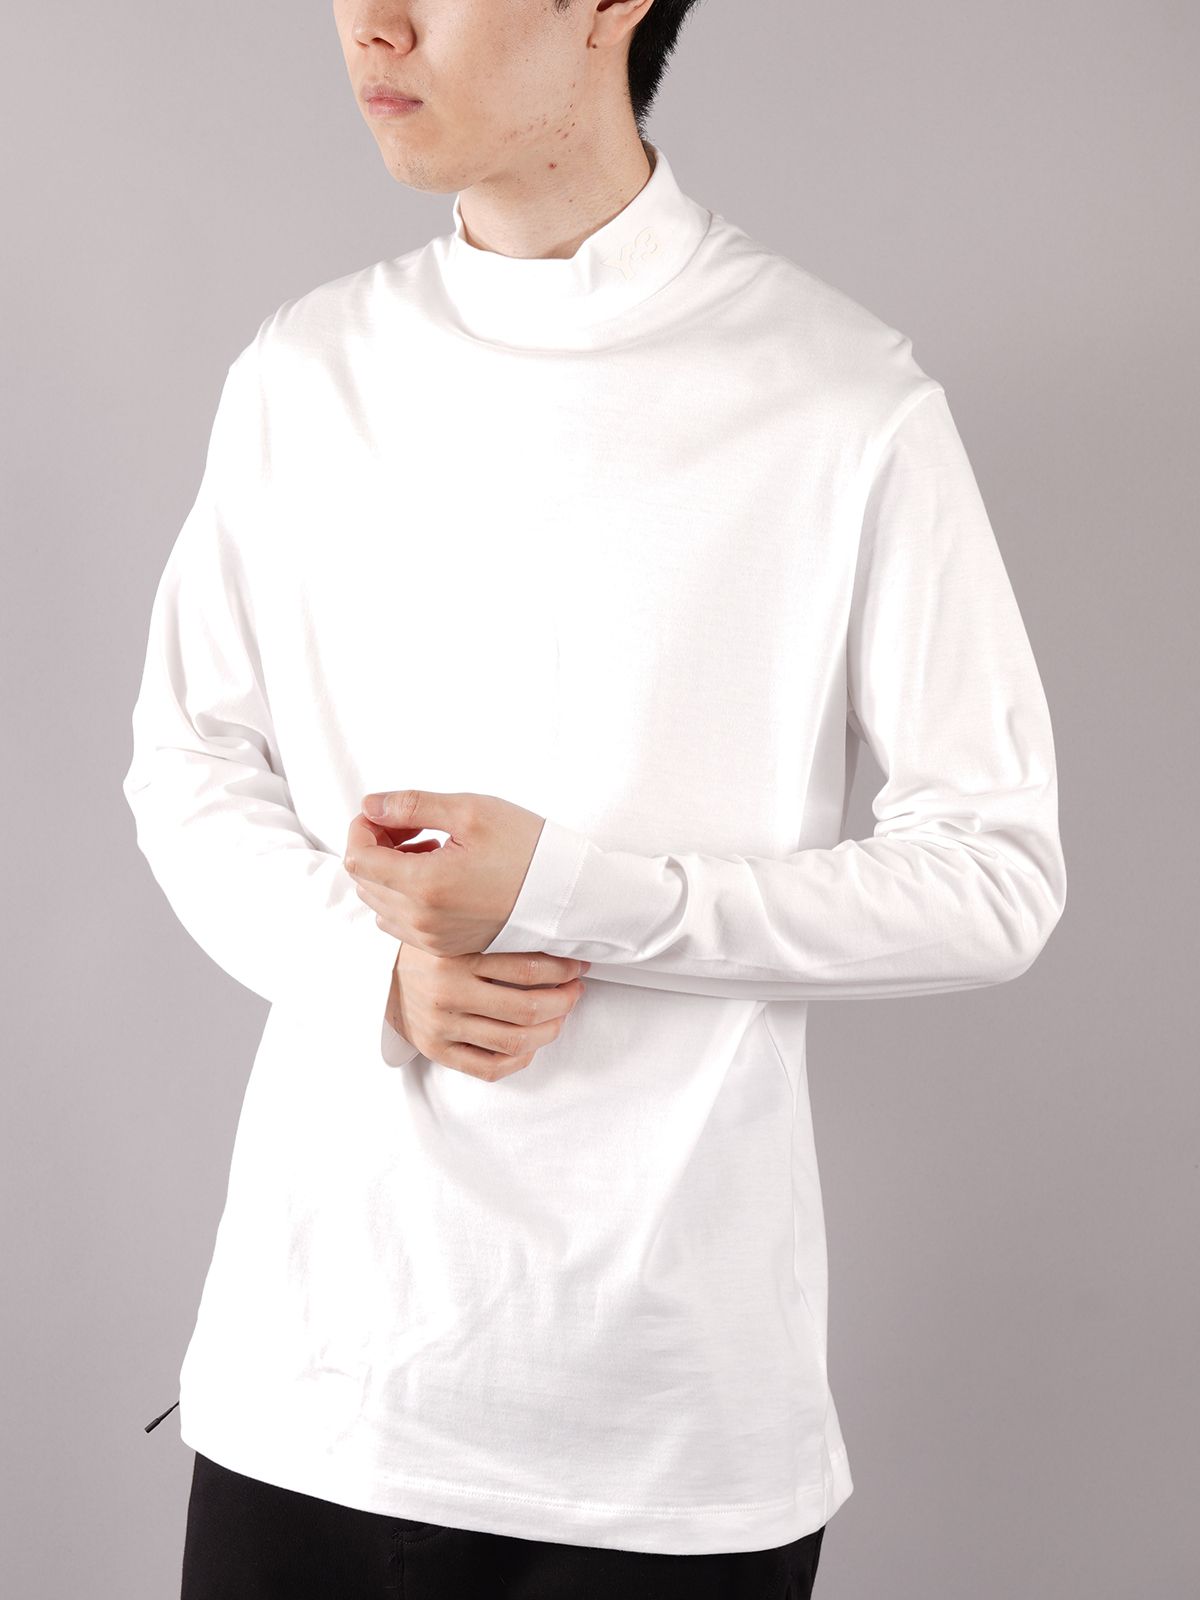 M CLASSIC MOCK NECK LS TEE / クラシック モックネック ロングスリーブ Tシャツ (ホワイト) - S